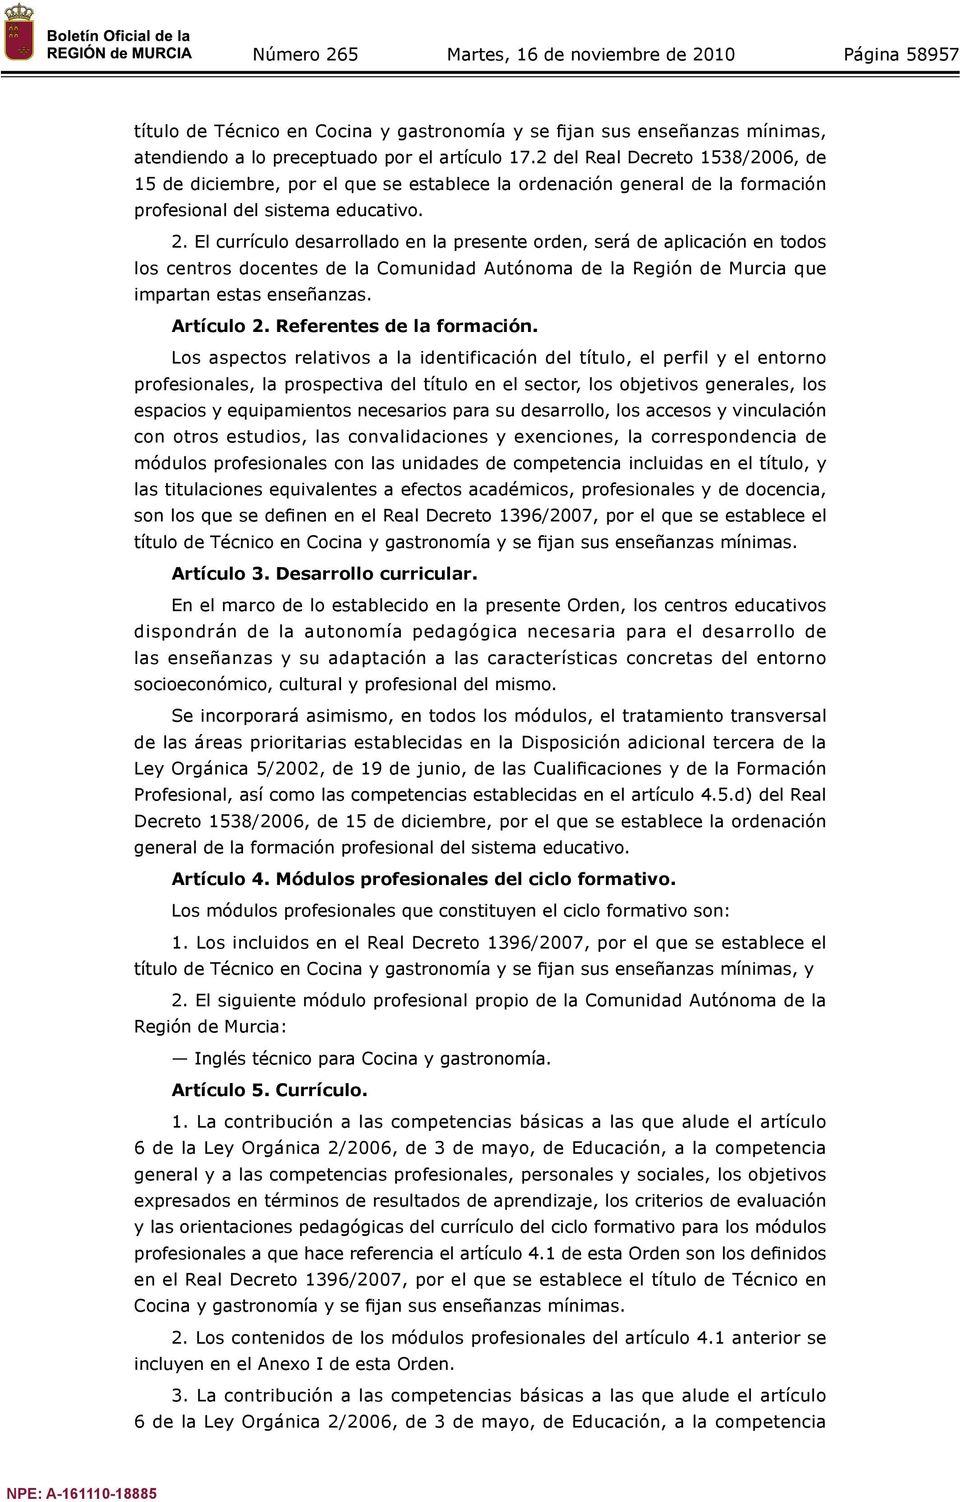 El currículo desarrollado en la presente orden, será de aplicación en todos los centros docentes de la Comunidad Autónoma de la Región de Murcia que impartan estas enseñanzas. Artículo 2.